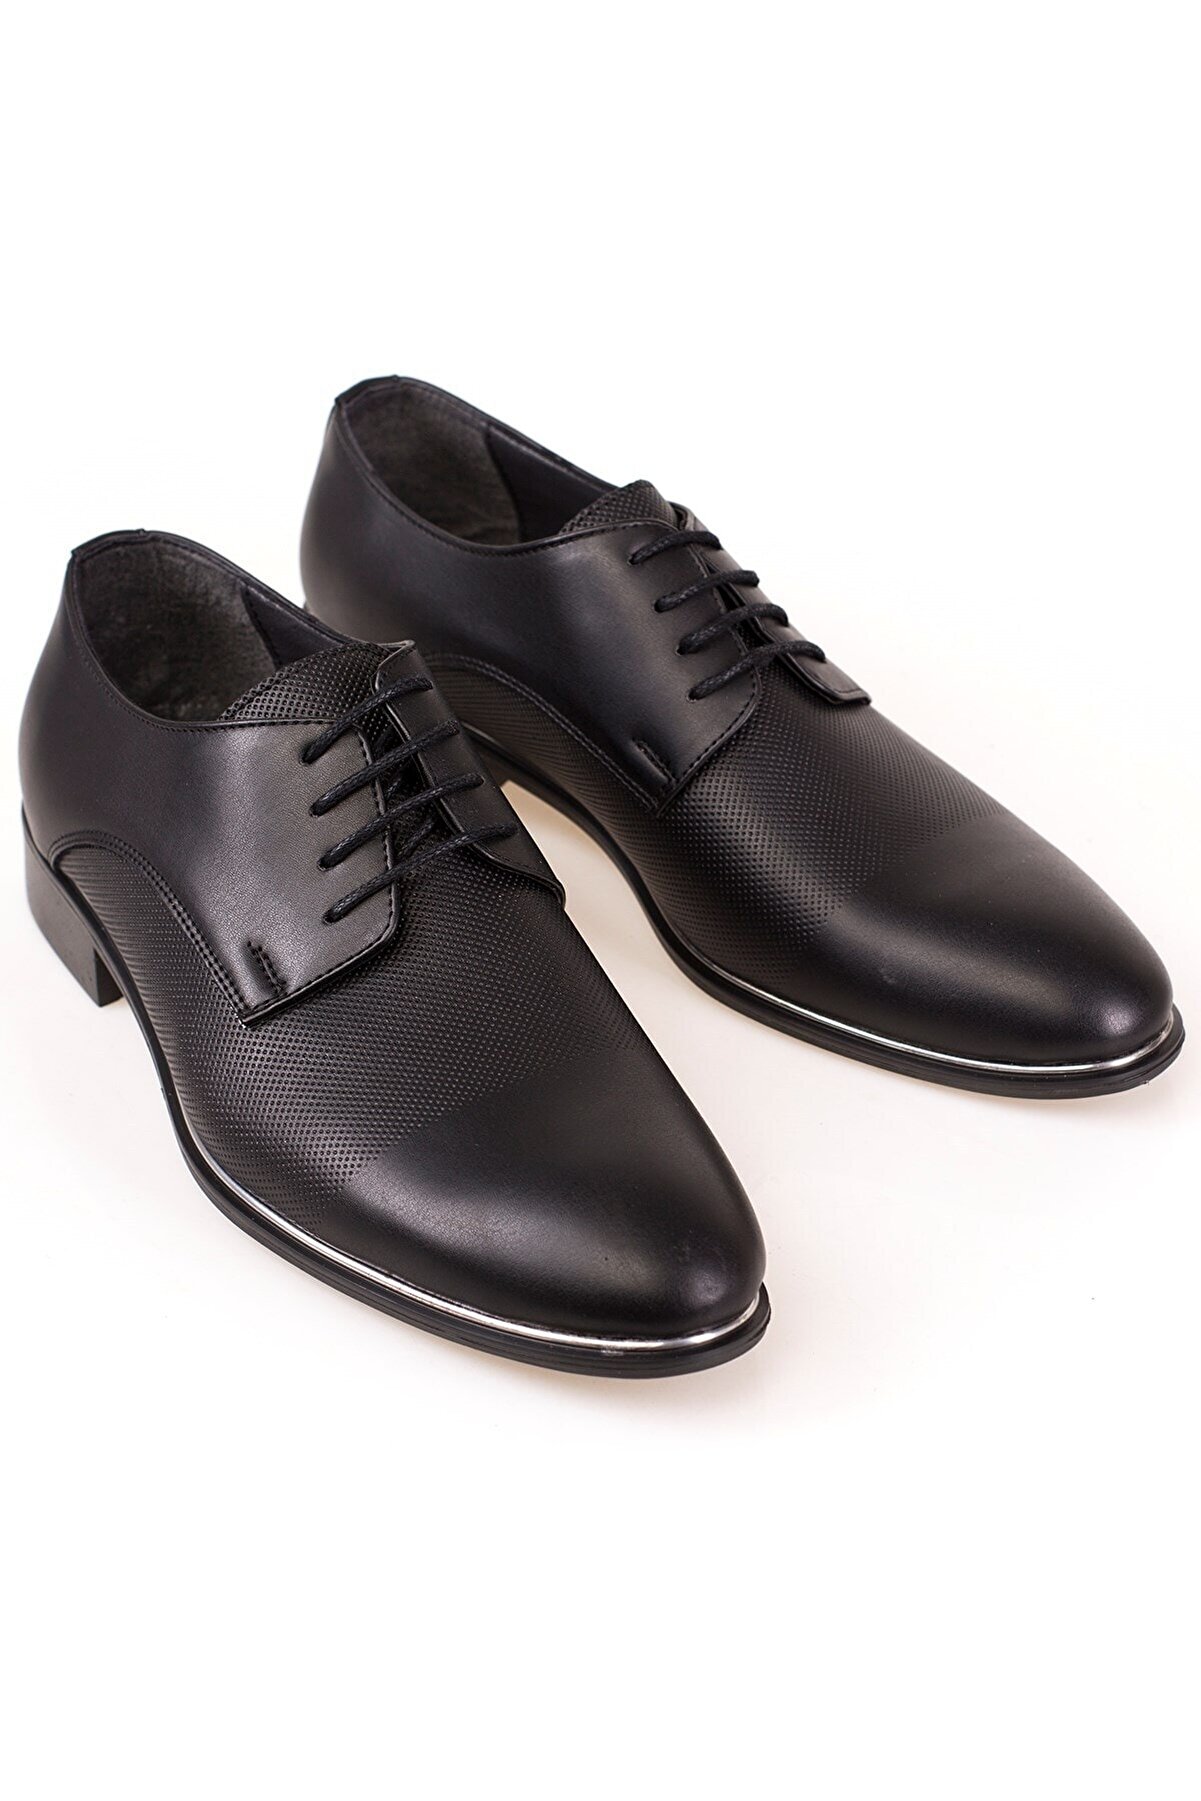 depderi Klasik Erkek Siyah Damatlık Ve Takım Elbiseye Uygun Ayakkabı